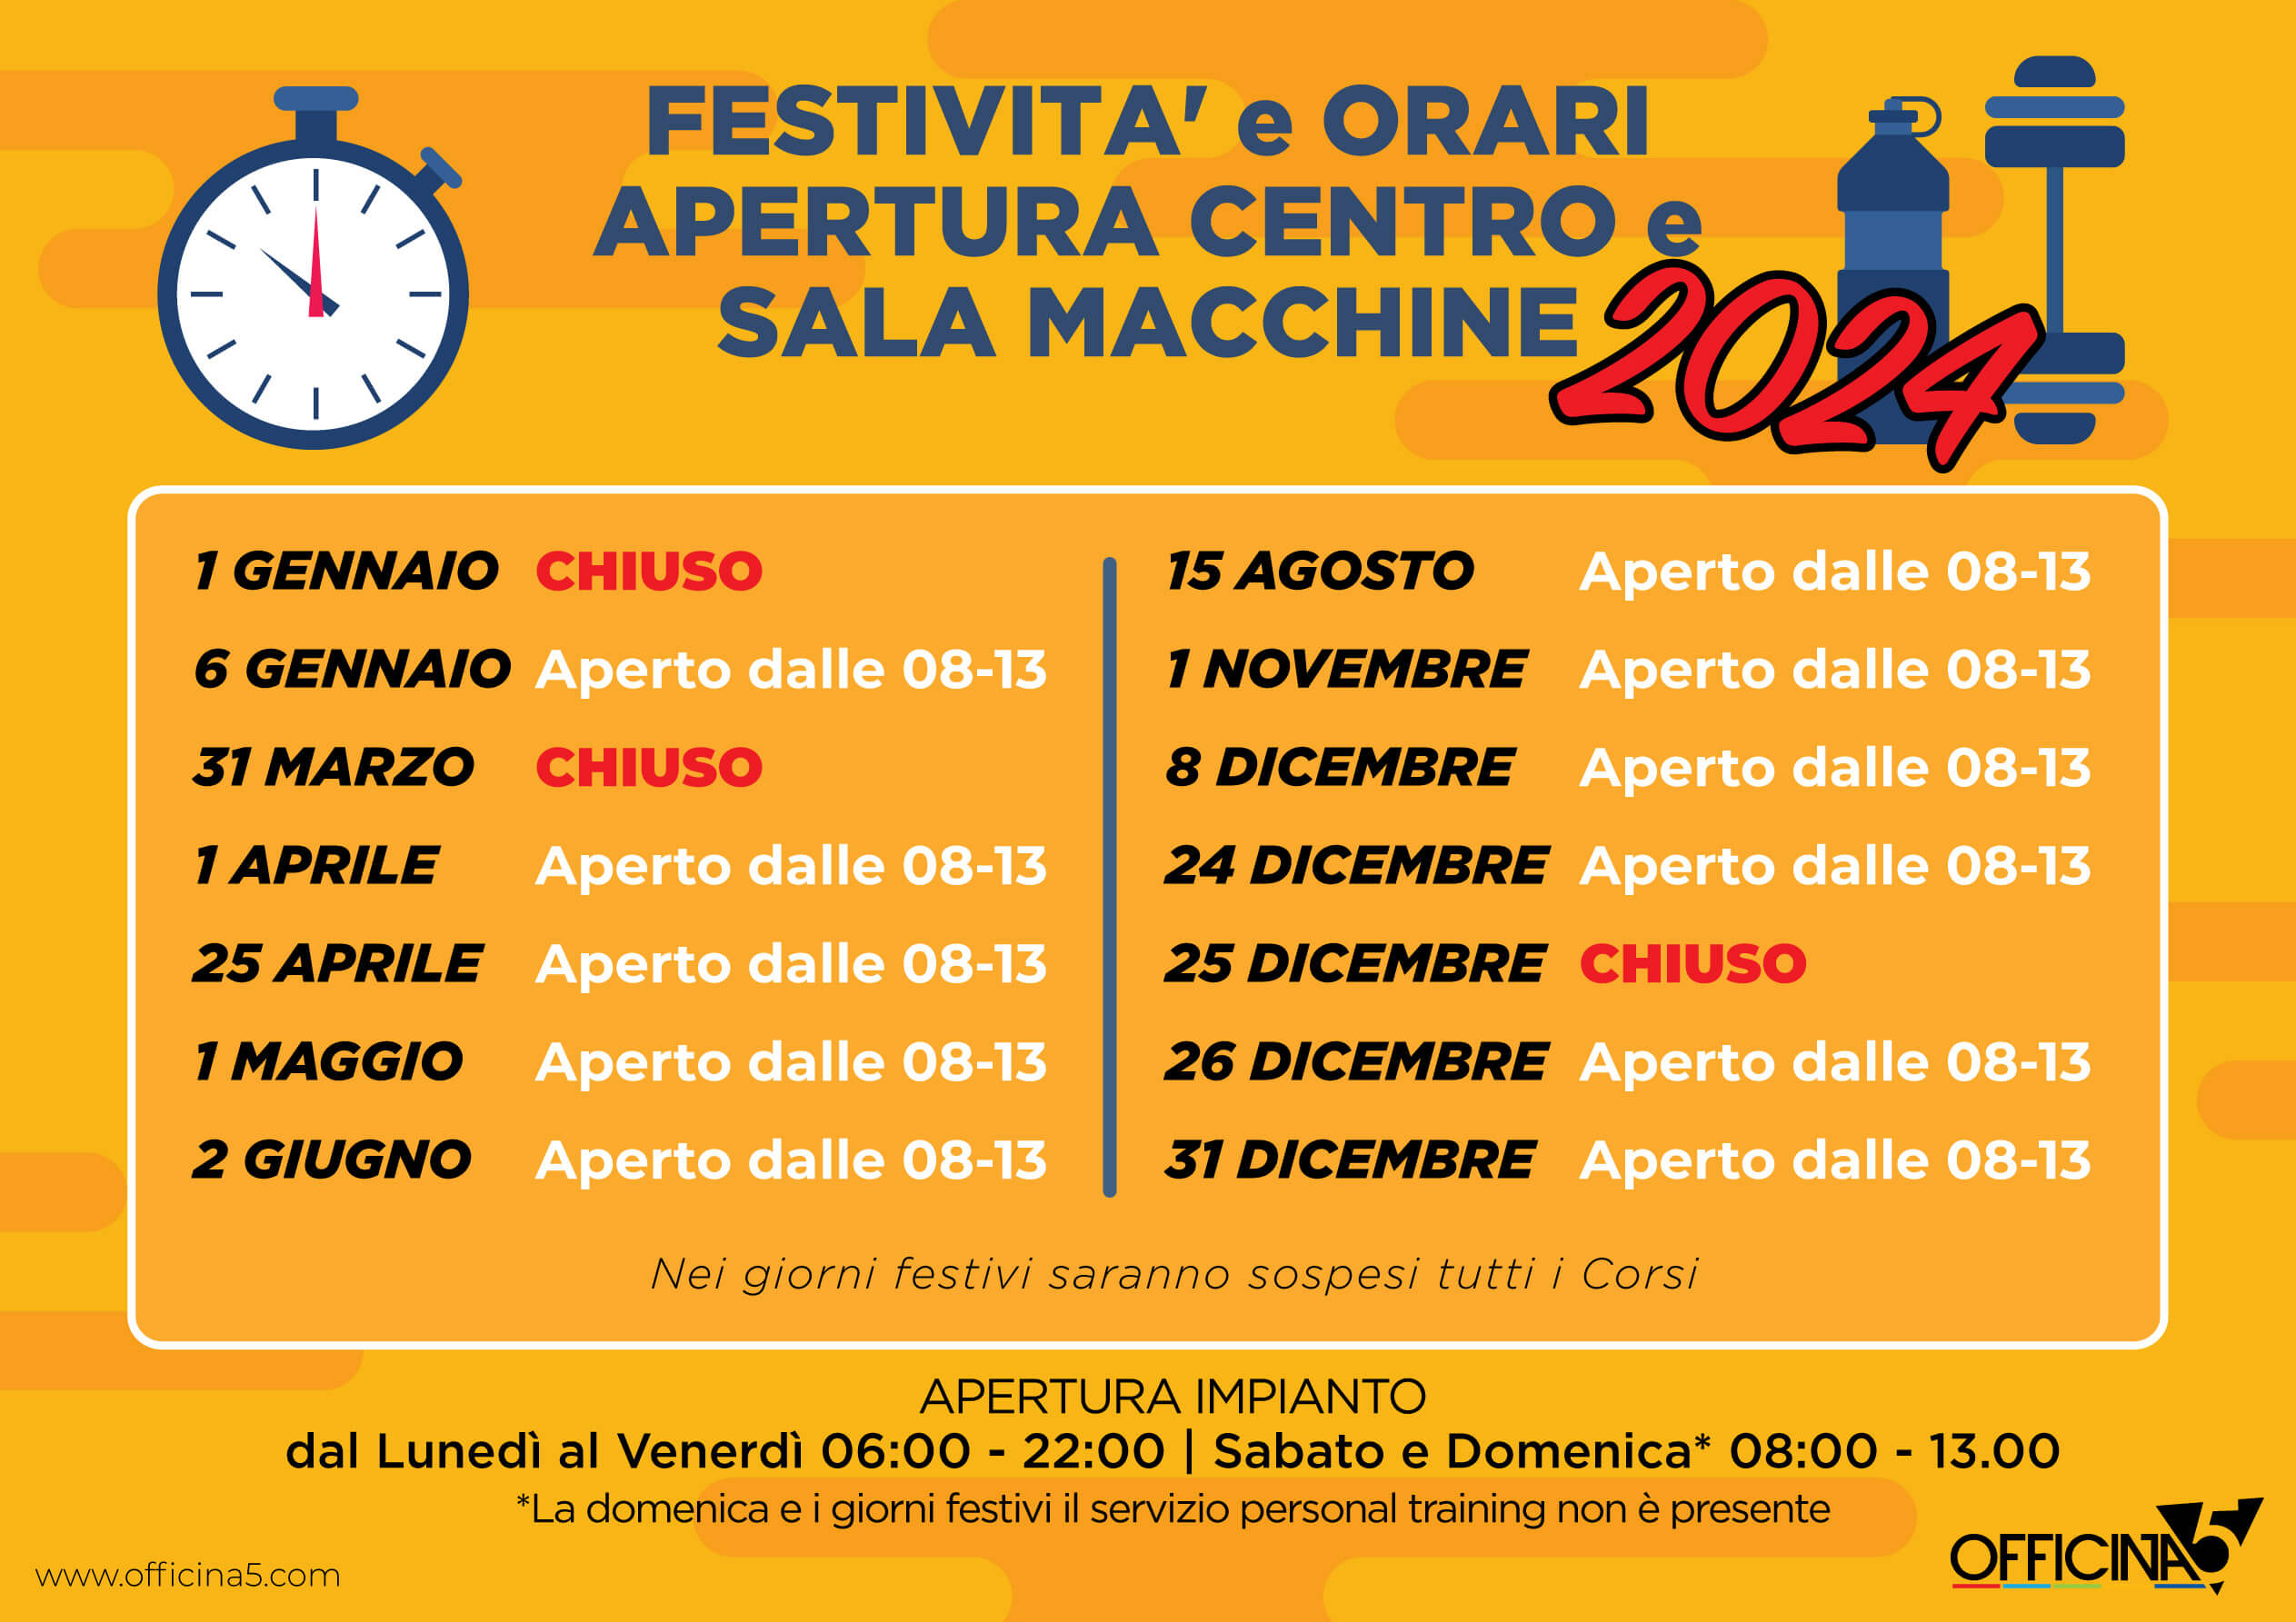 Orari di OFFICINA5 e salsa macchine durante le festività natalizie 2022-23